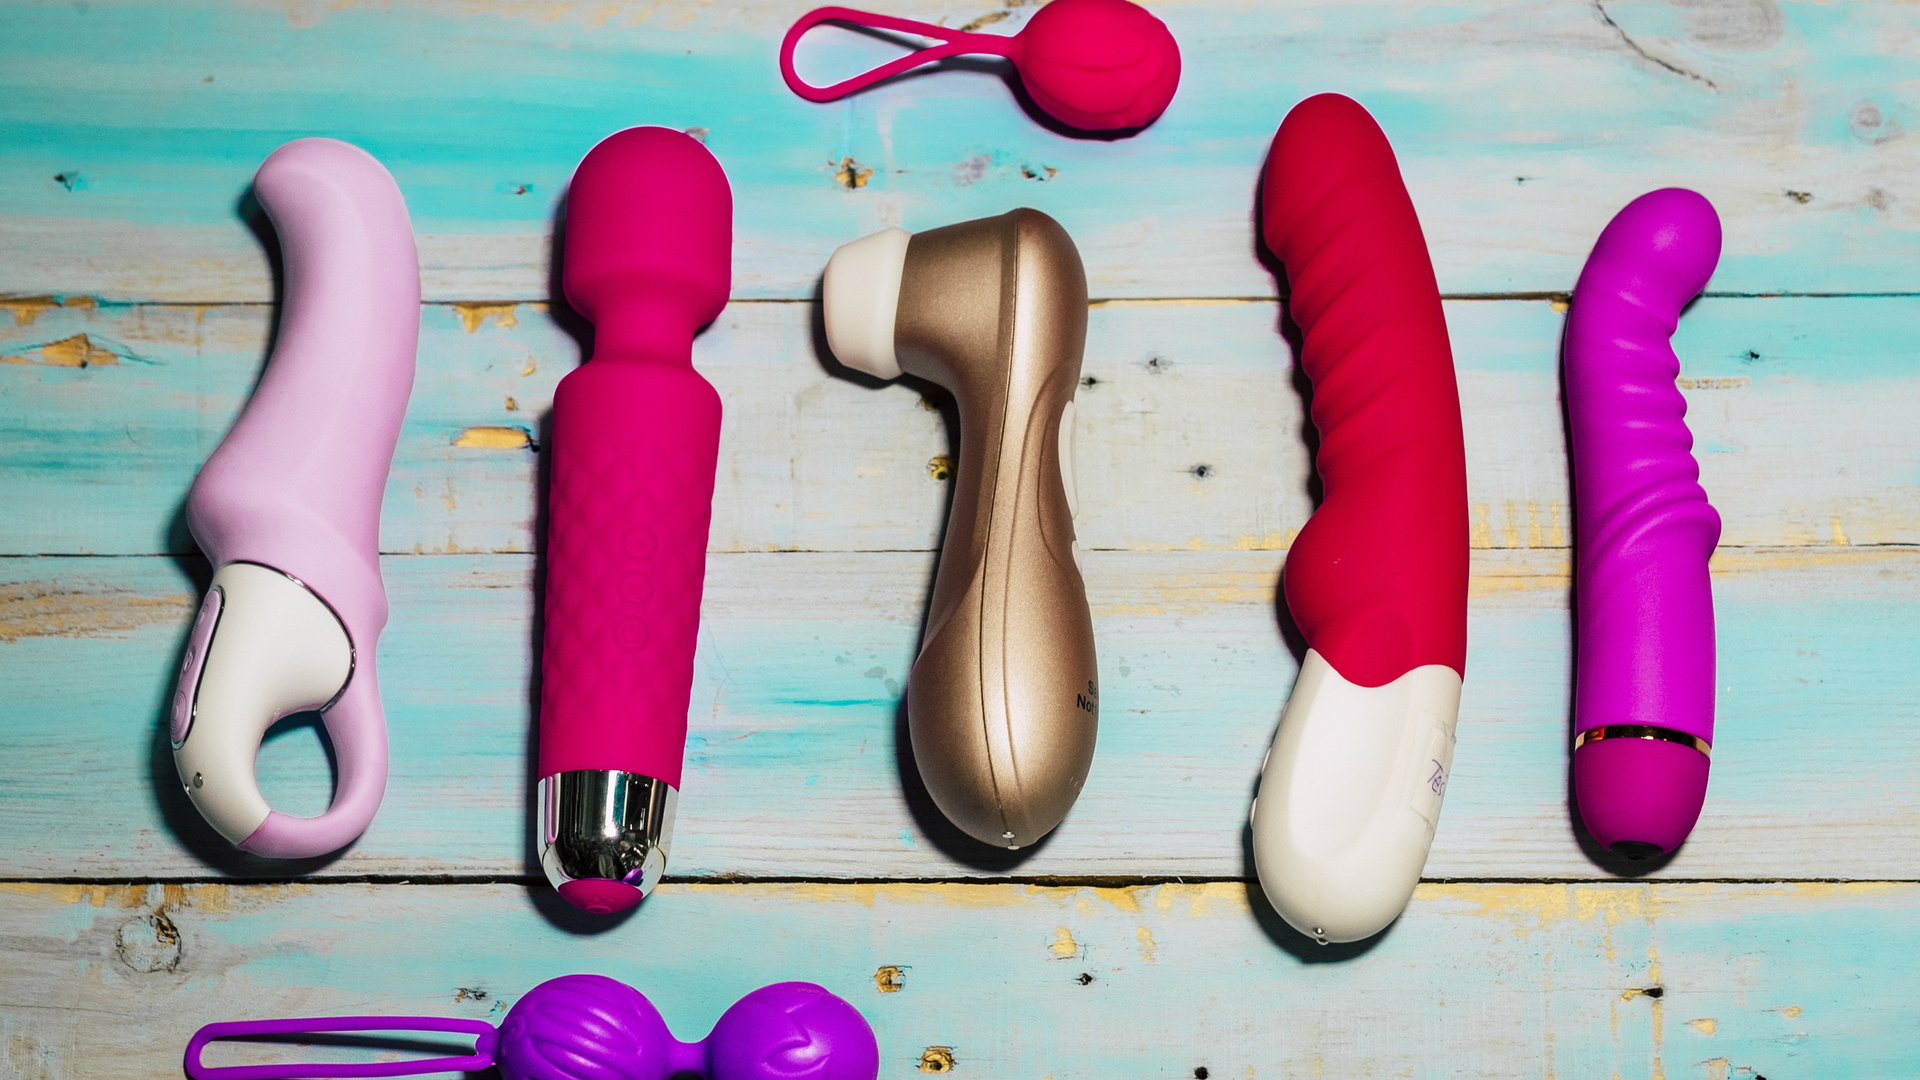 Los 10 juguetes eróticos más vendidos en